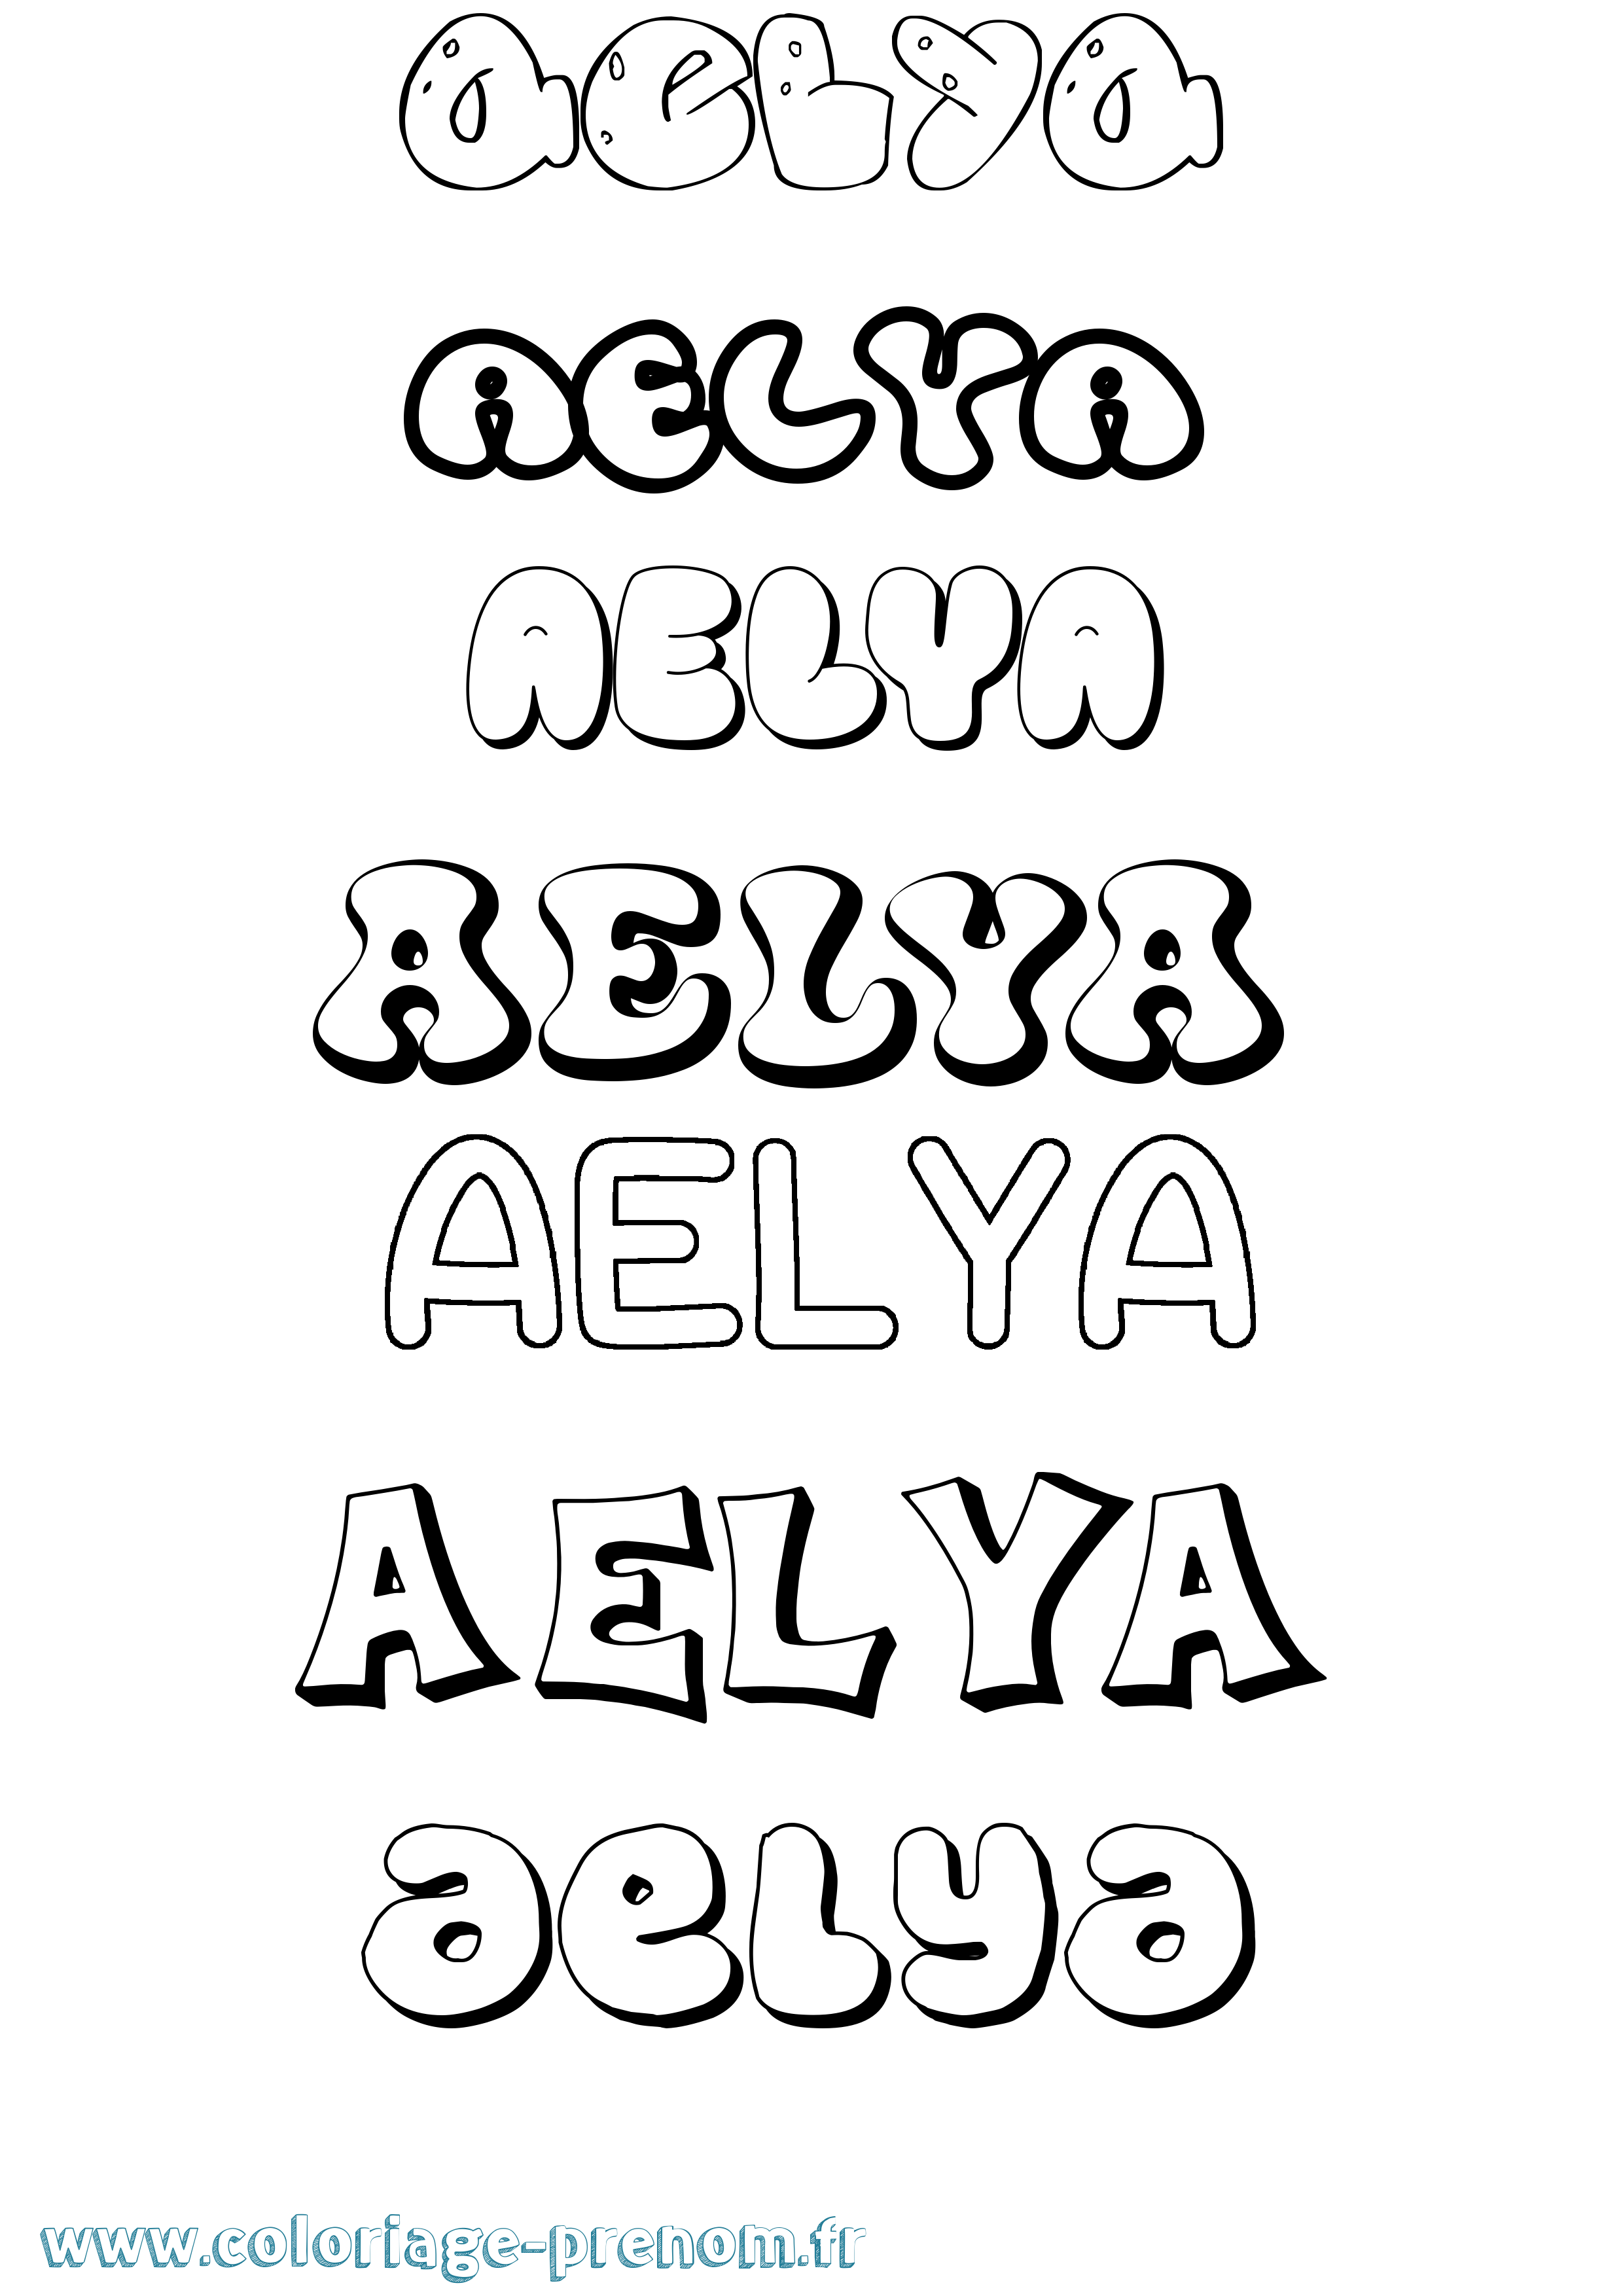 Coloriage prénom Aelya Bubble